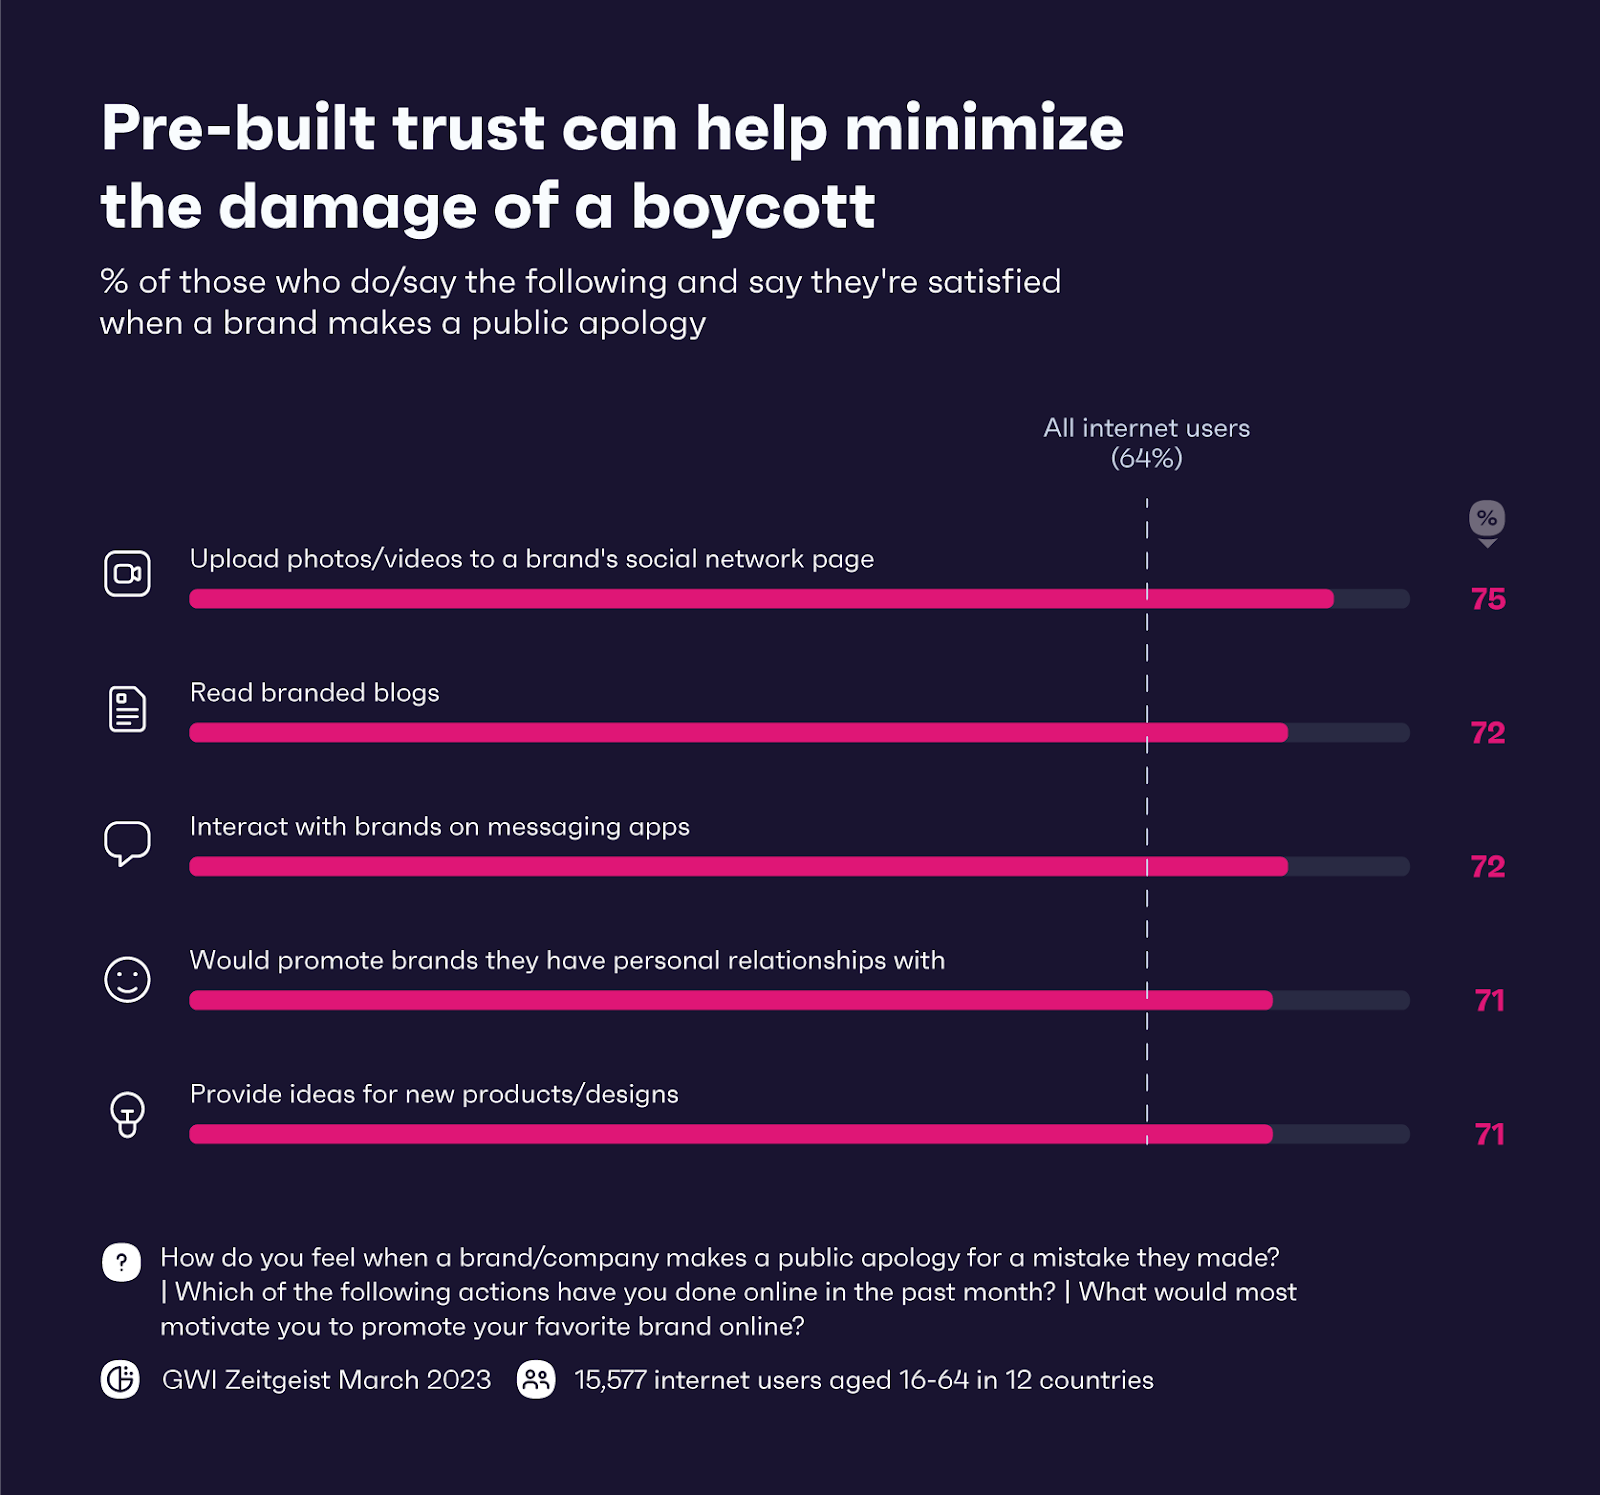 Chart showing how pre-built trust can help minimize boycott damage